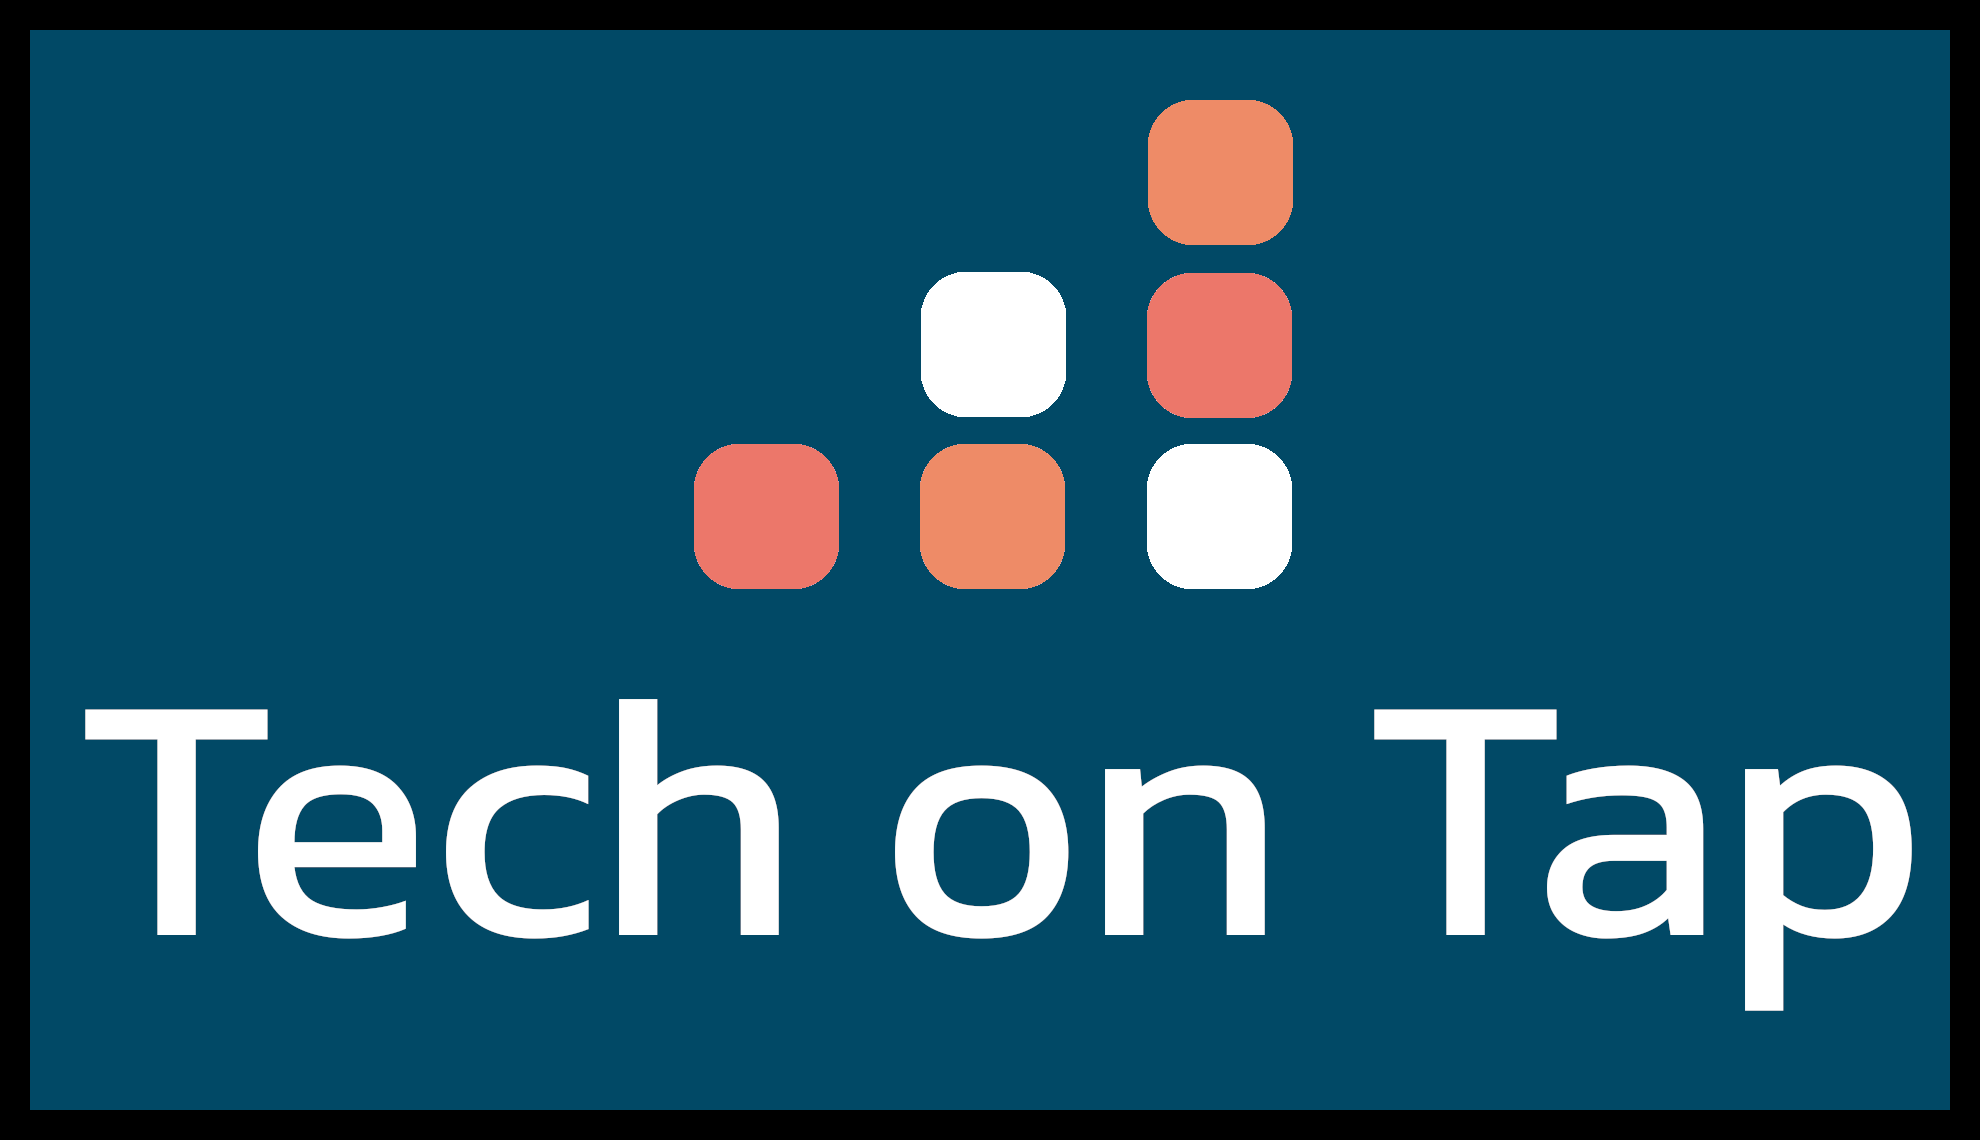 Logotipo de Tech on Tap. Fondo azul acero con la escritura Tech on Tap y un logotipo dibujado de cuadrados apilados para indicar el progreso.